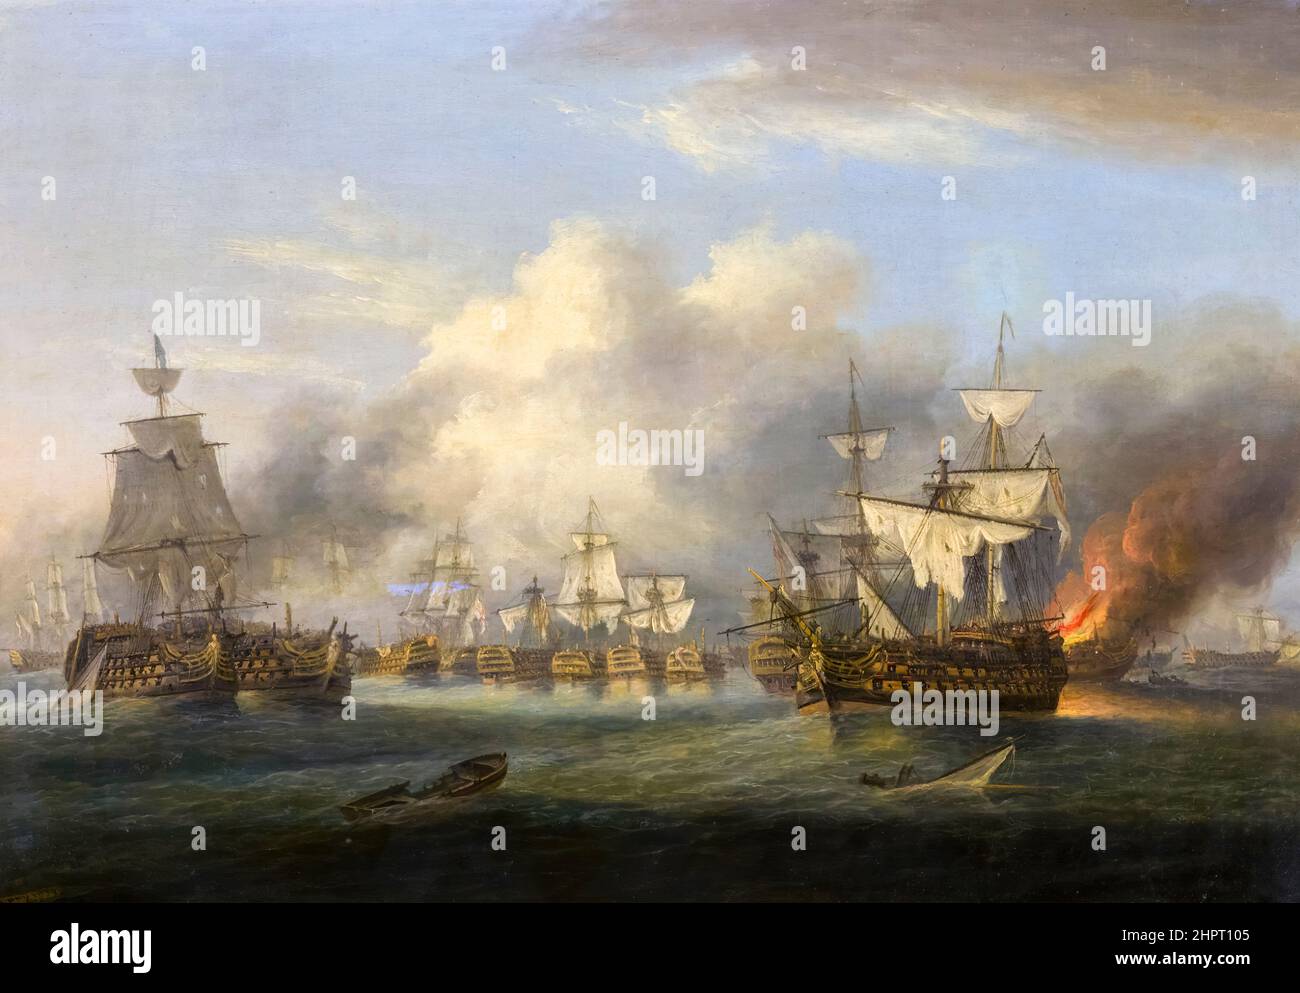 Fin de la bataille de Trafalgar, 1805, peinture à l'huile sur toile par Thomas Luny, 1834 Banque D'Images